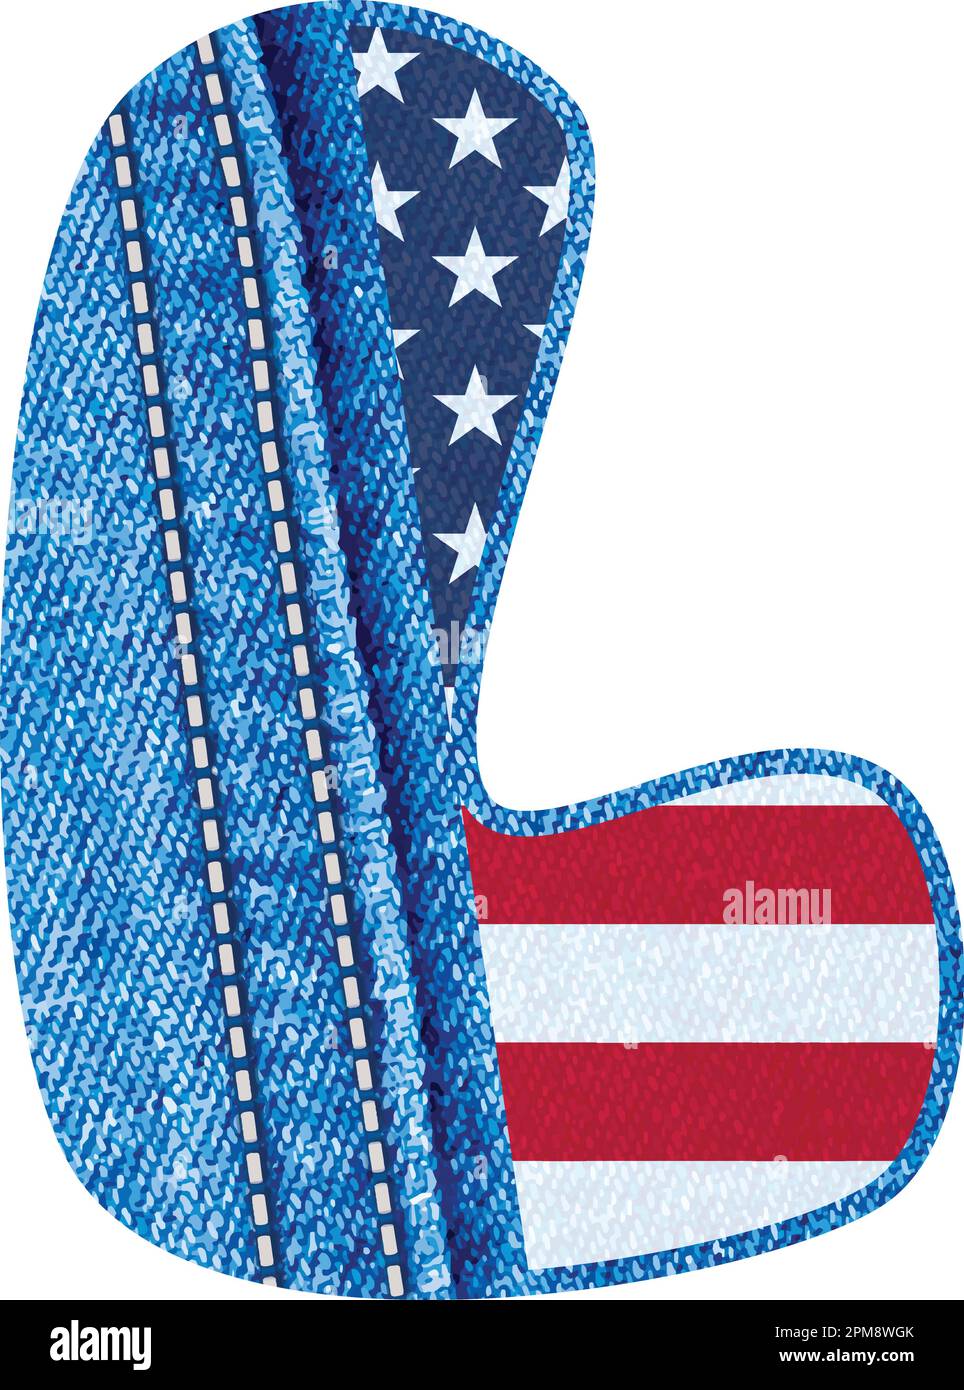 Vector - la lettre L avec la texture du tissu denim bleu et du drapeau américain - initiale L avec le tissu jean et le drapeau américain - alphabet de Tissu jean De A à Z Illustration de Vecteur